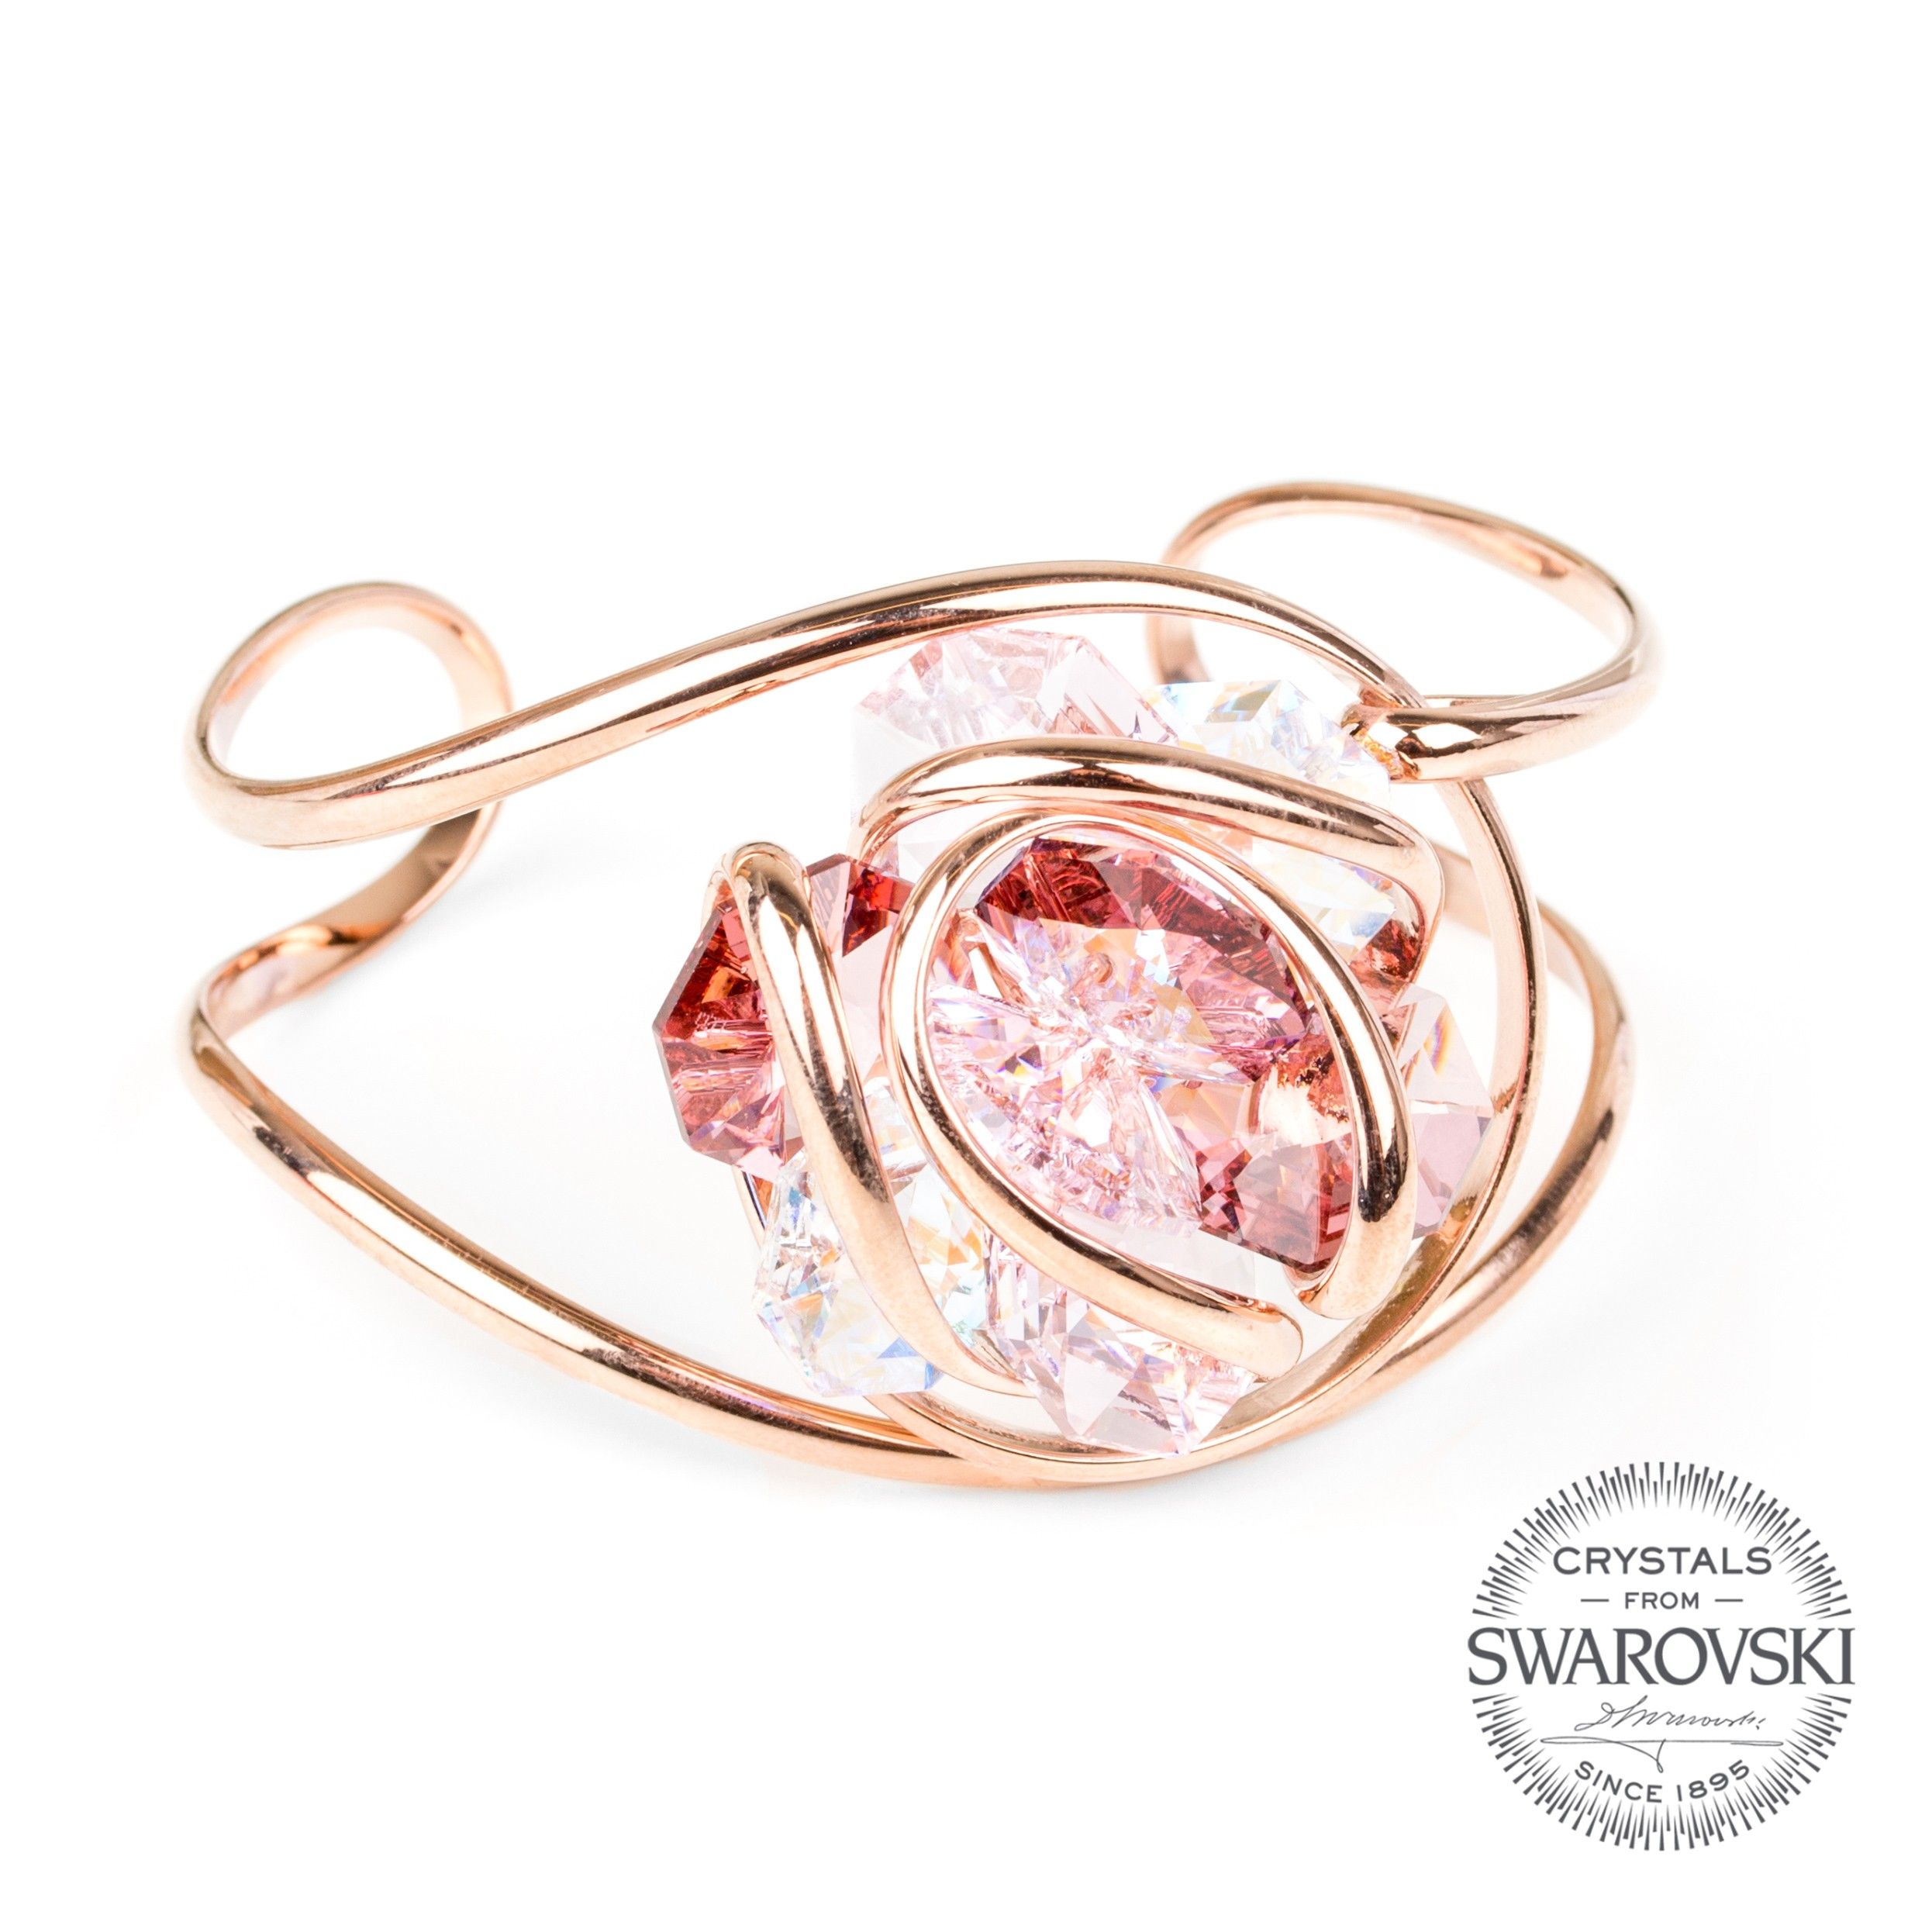 fairy pregnant throw away Andrea Marazzini jewelry - Brace let crystal flower Swarovski rosé